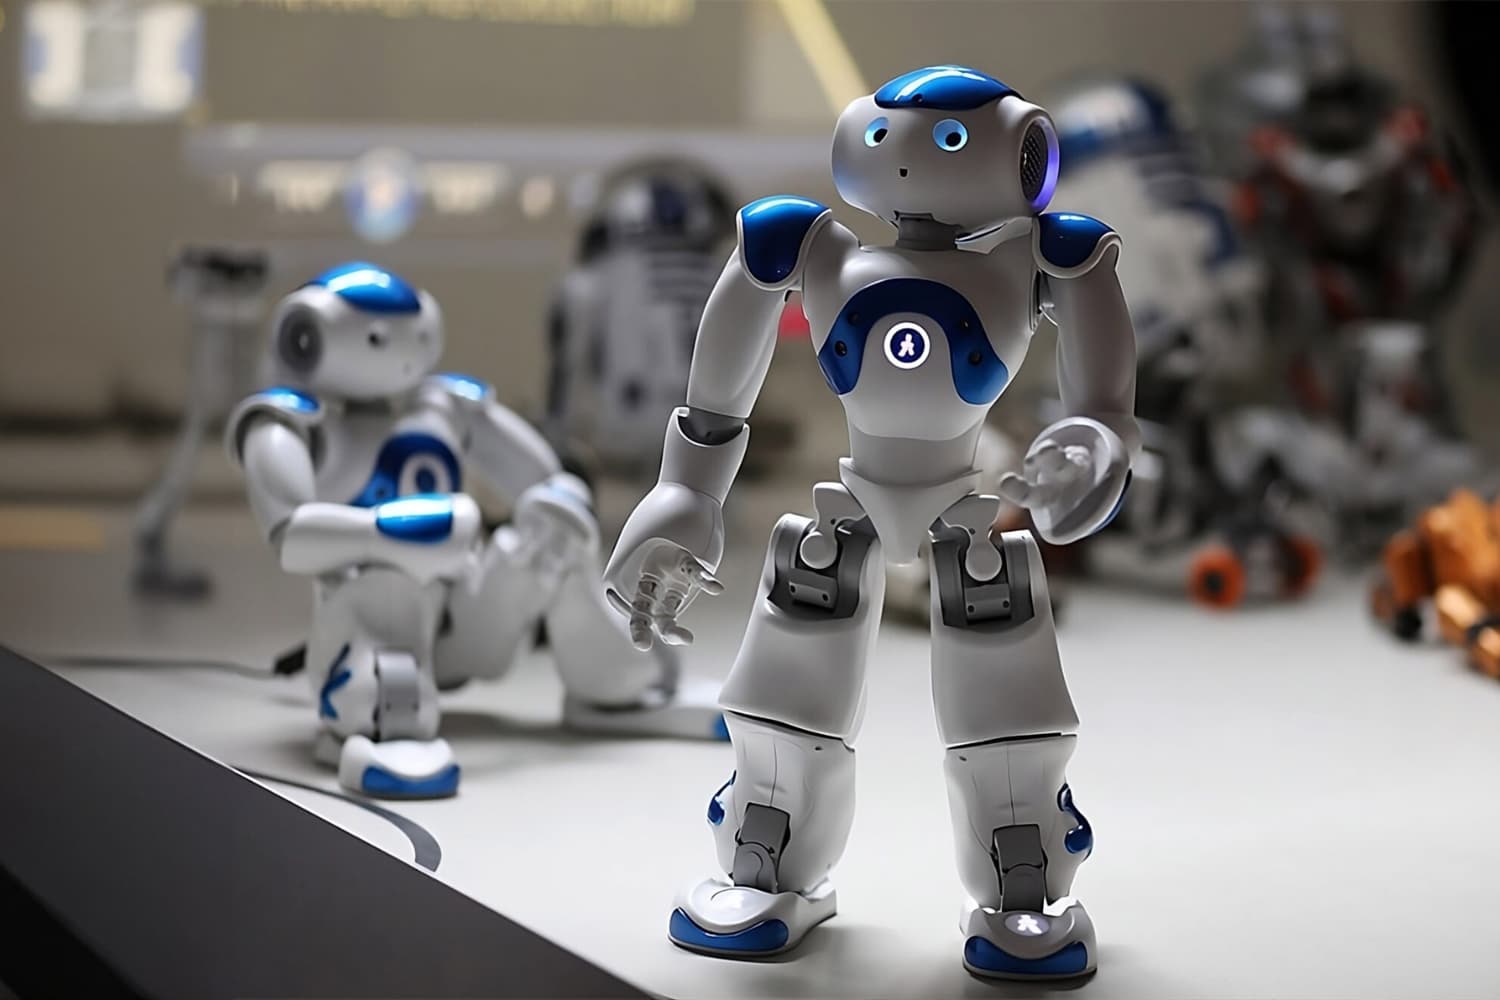 Visit THE ROBOT MUSEUM: the robotics museum in Madrid